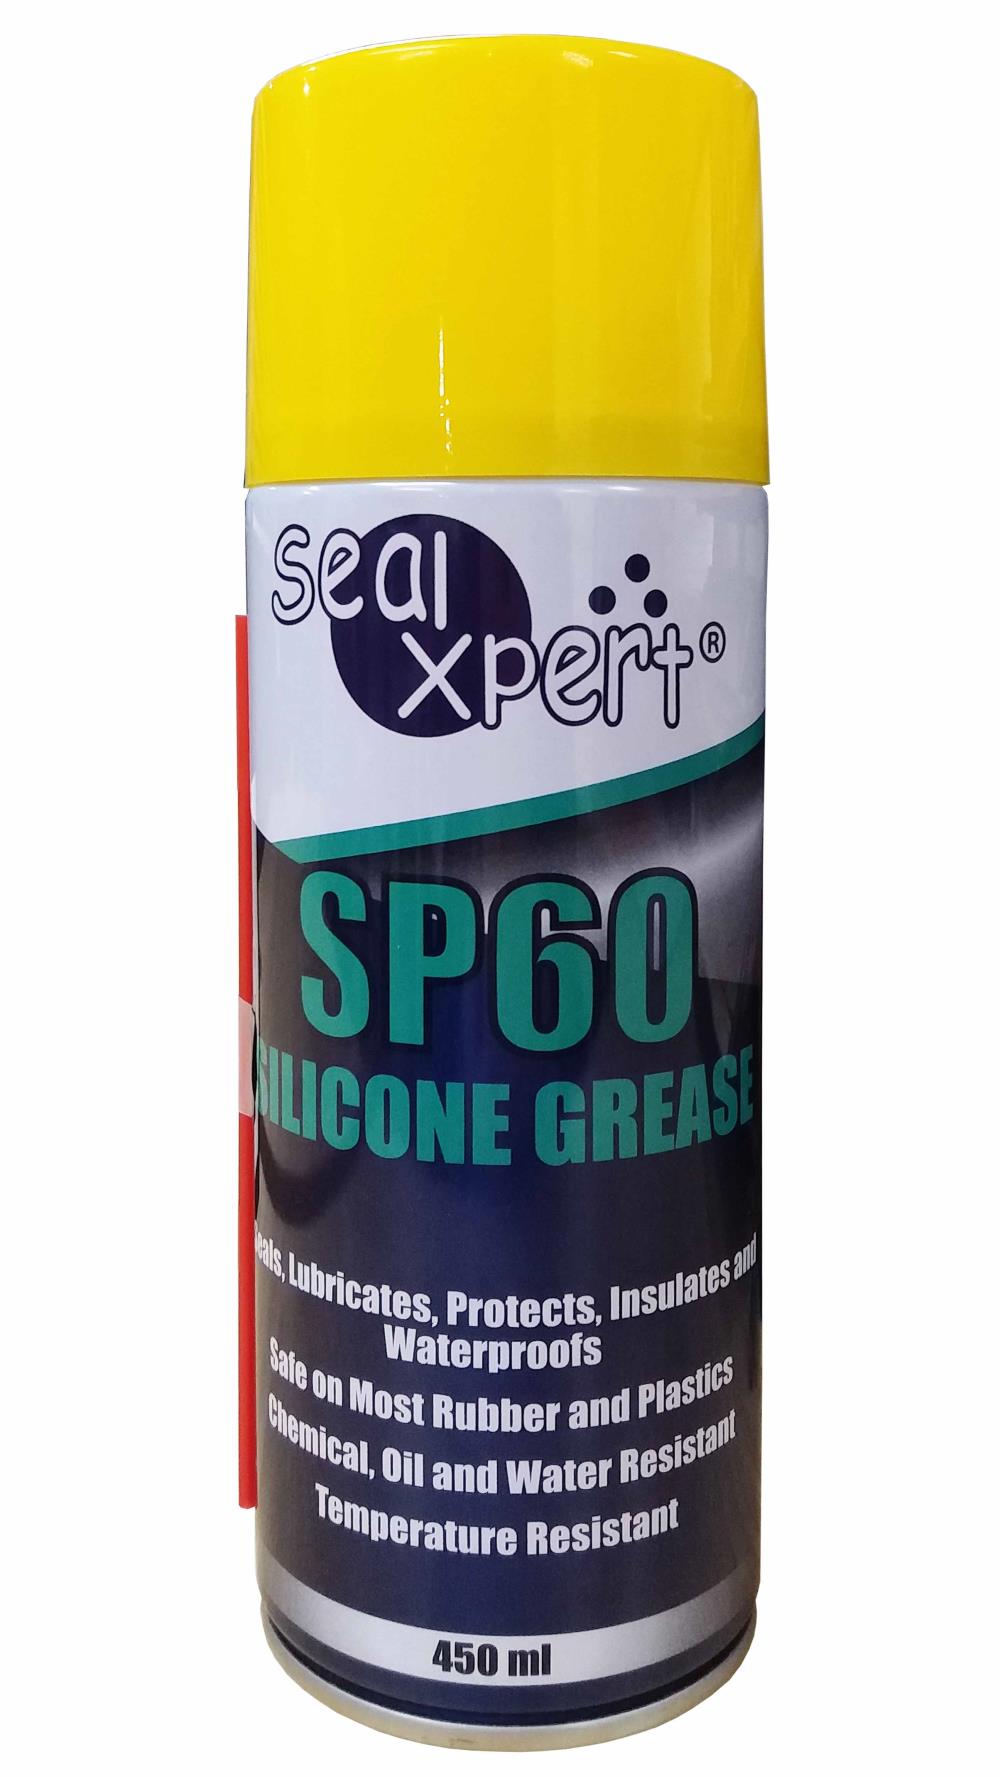 SP60 Silicone Grease  สเปรย์หล่อลื่นสูตรซิลิโคน ใช้หล่อลื่น Oring ชิ้นส่วนพลาสติกและยาง